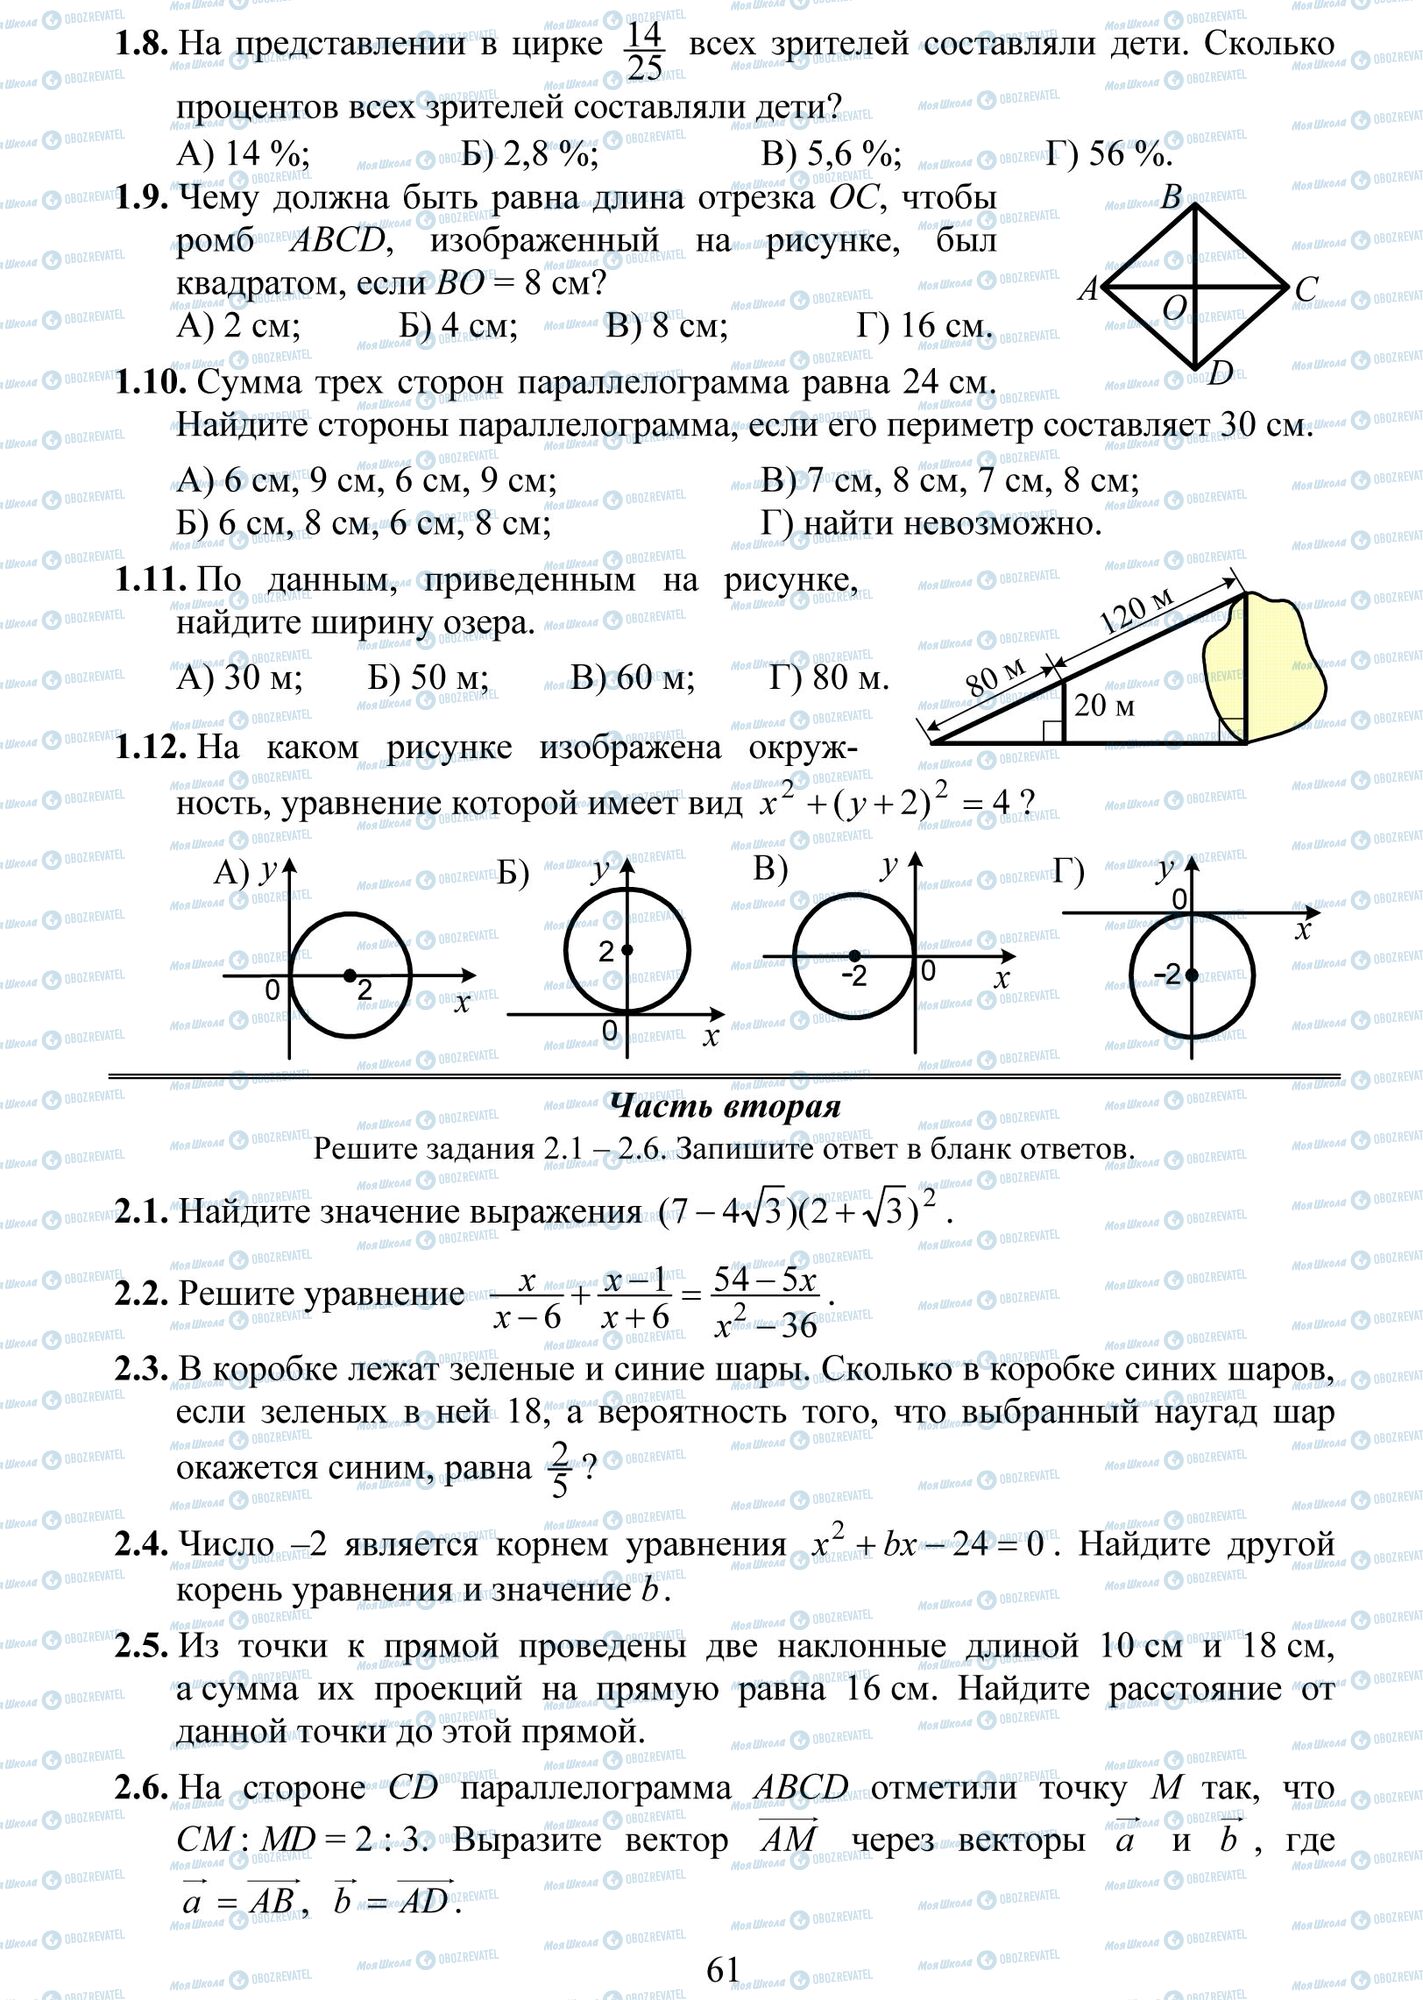 ДПА Математика 9 класс страница 8-12